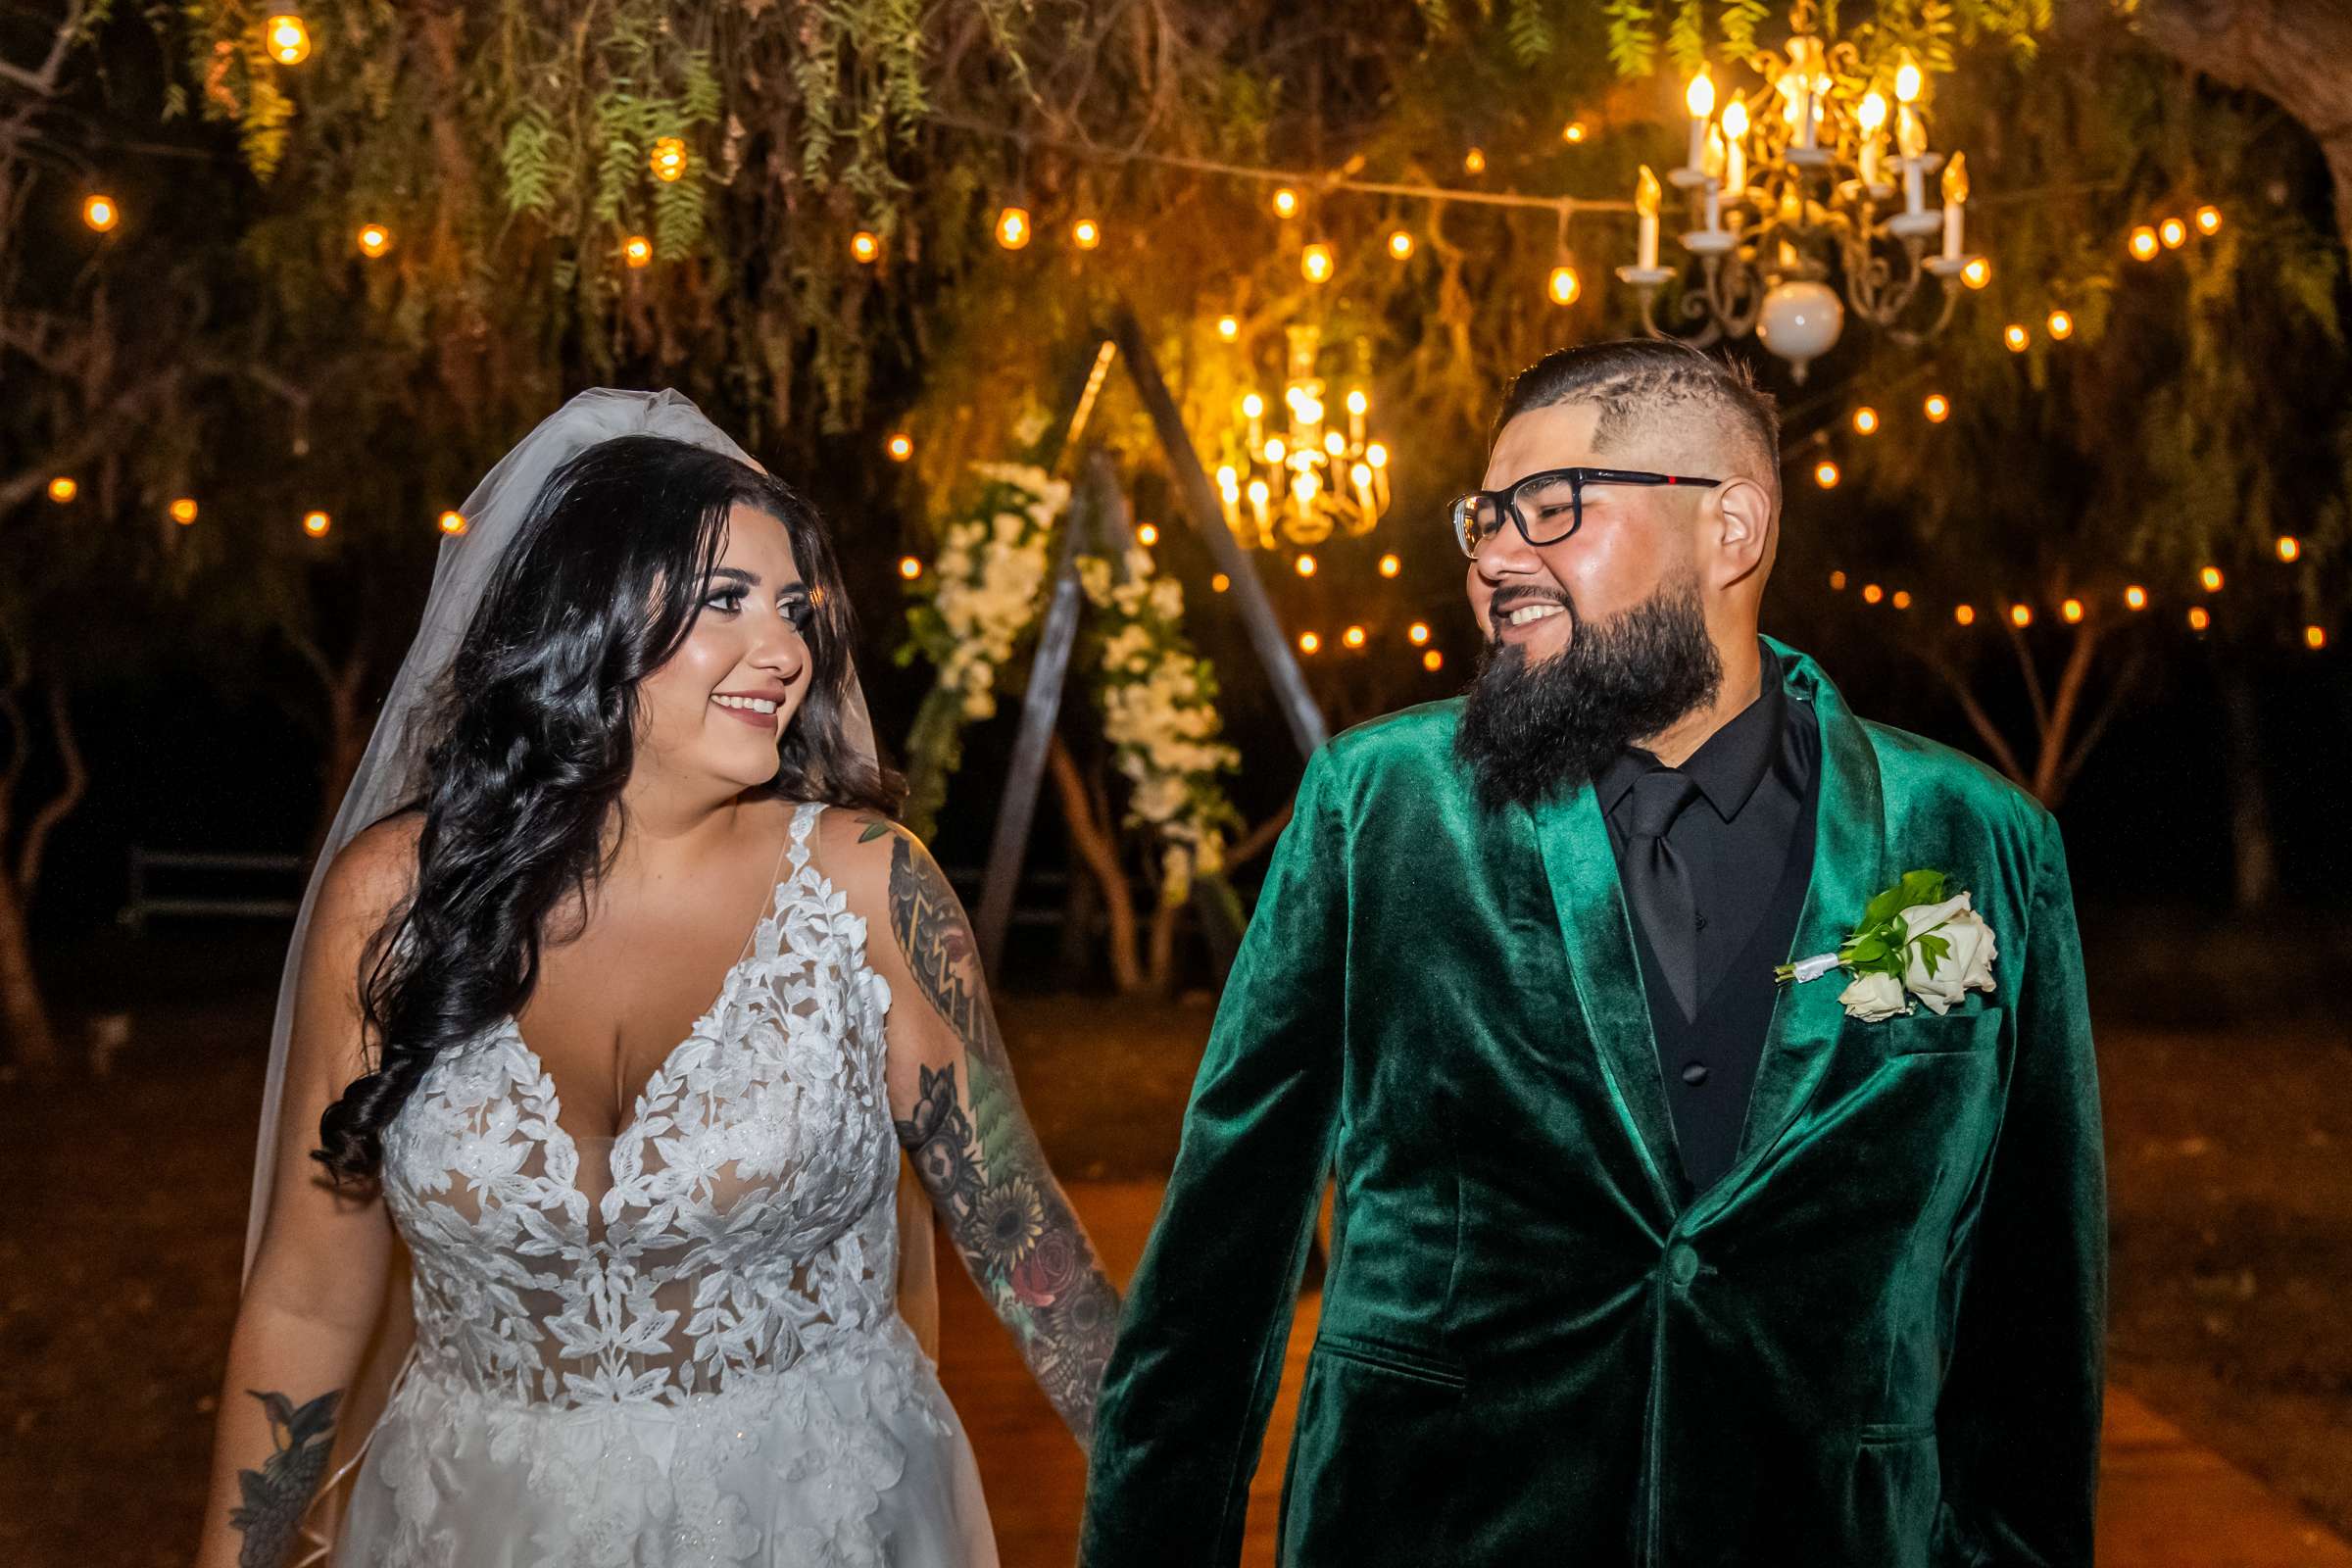 La Hacienda Wedding, Ashley and Alvaro Wedding Photo #18 by True Photography